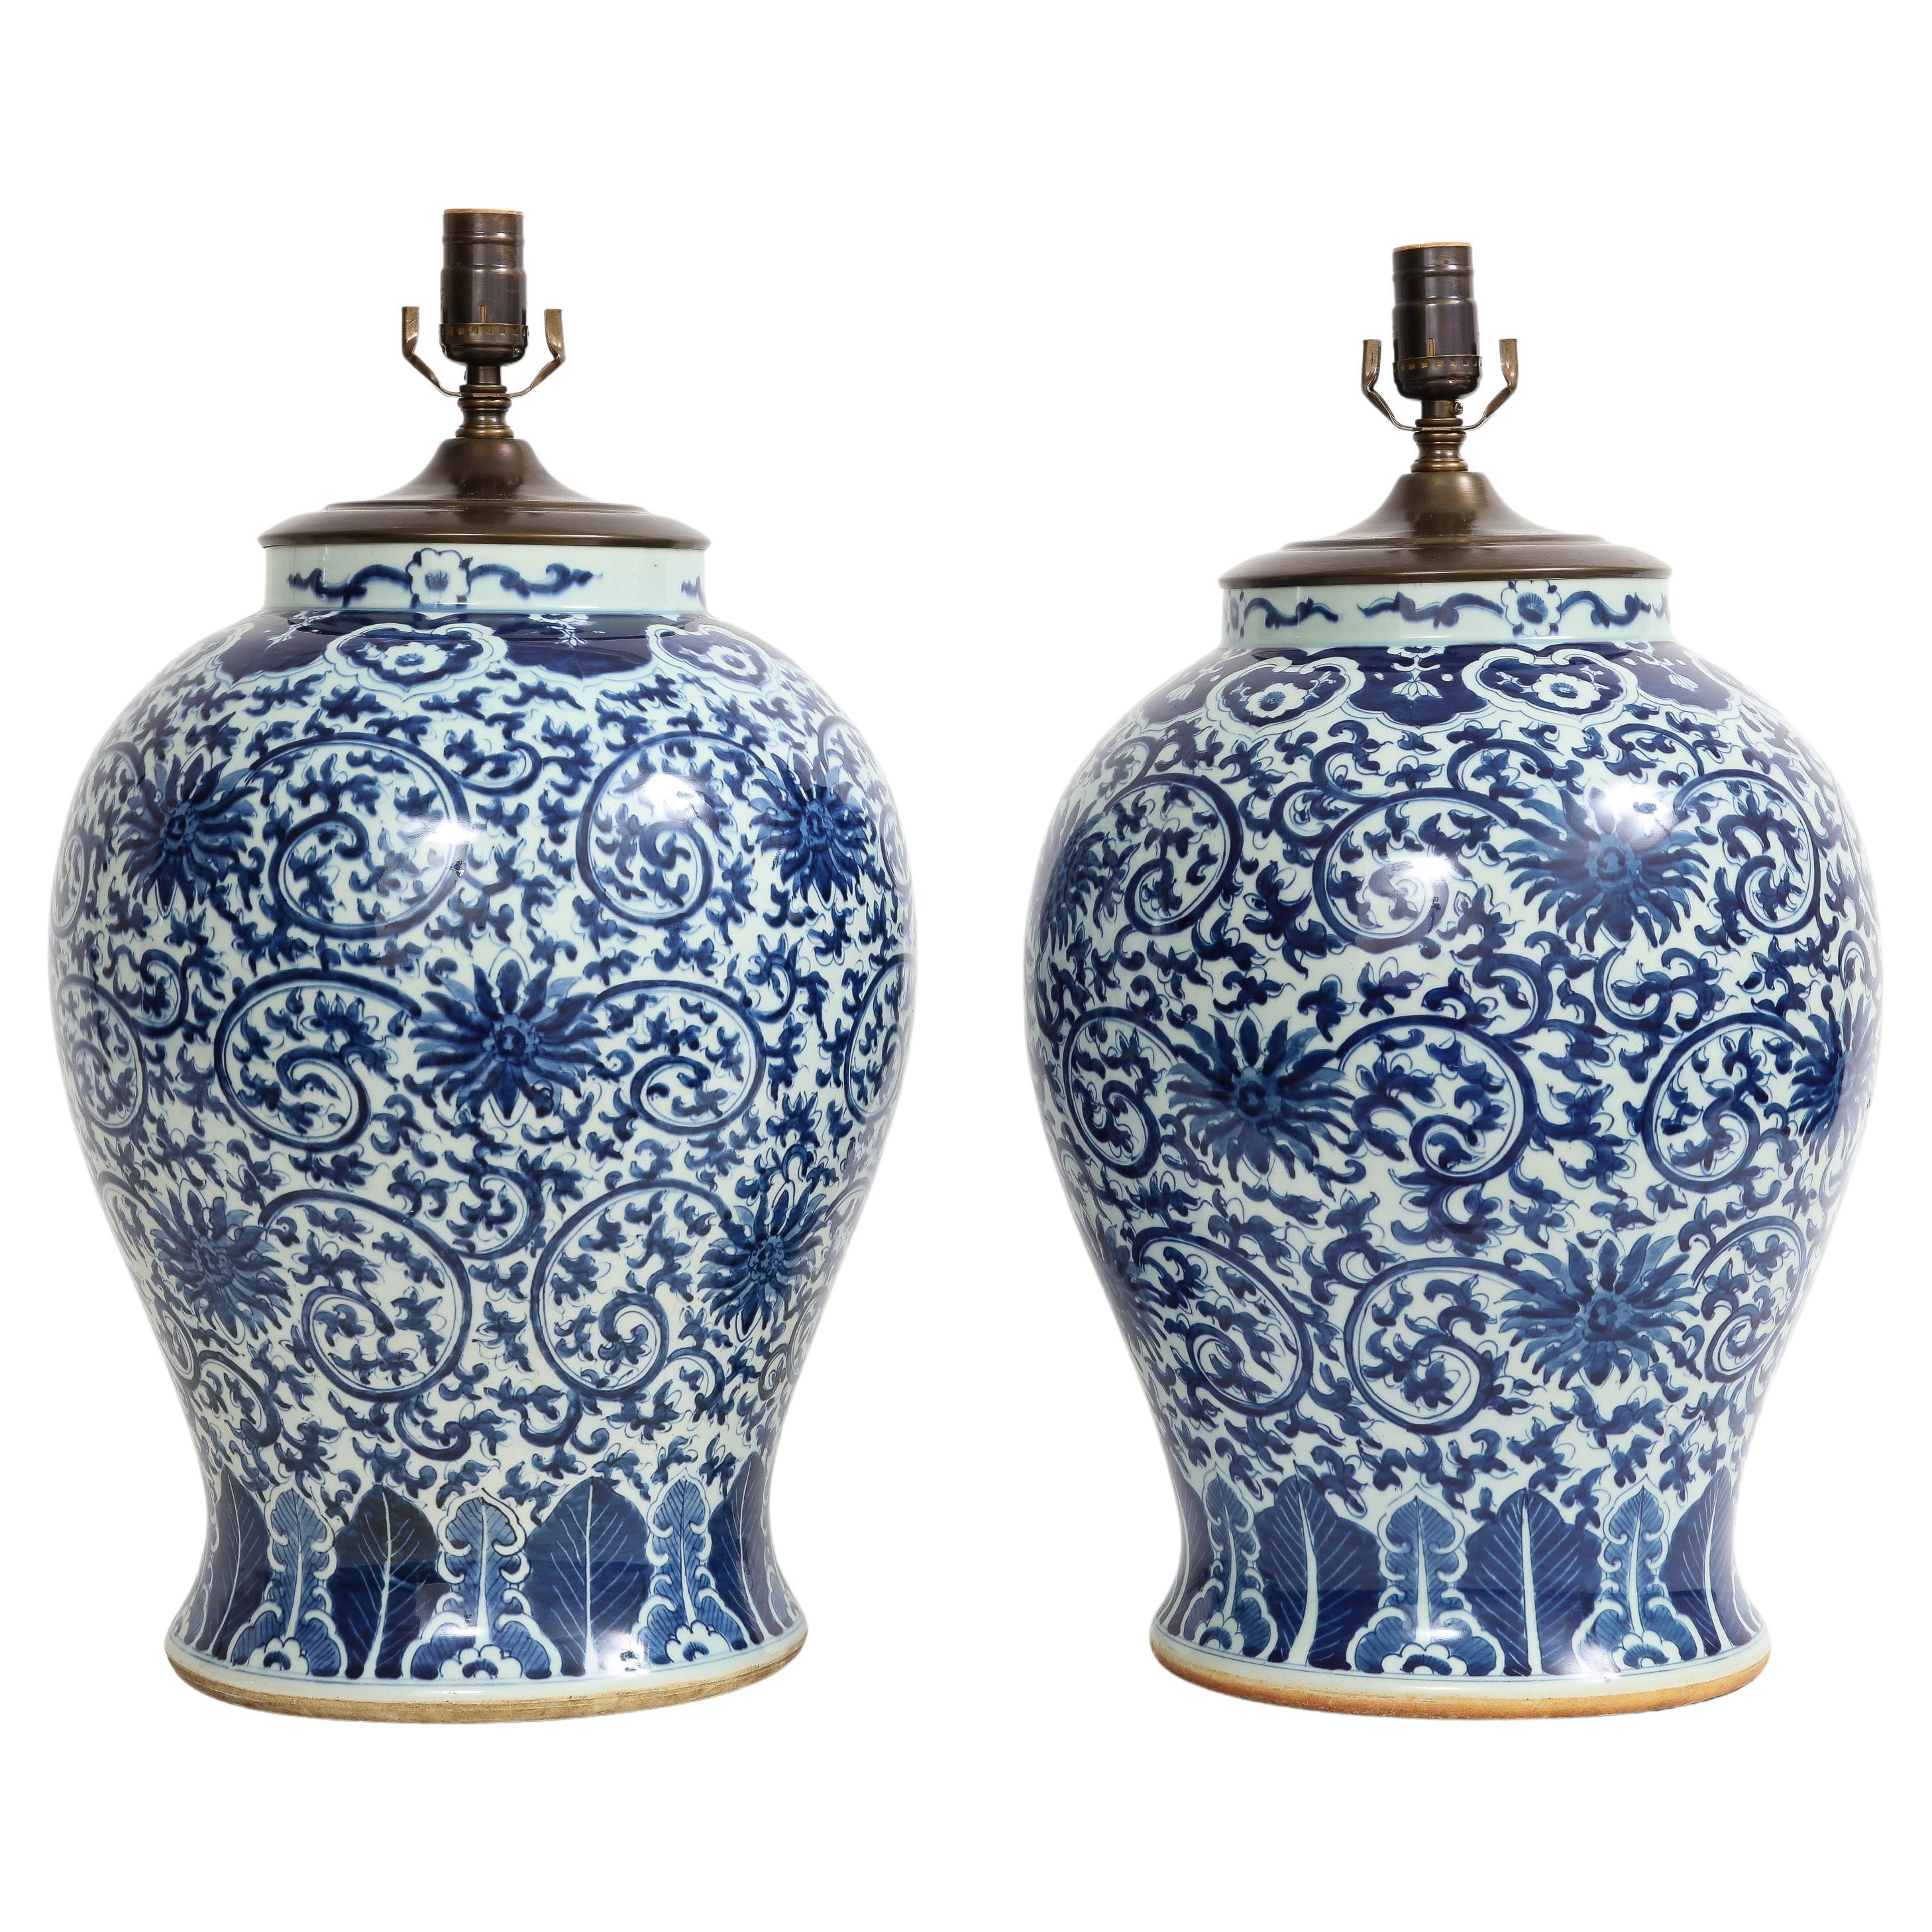 Paire de vases bleus et blancs de la dynastie Qing du 19e siècle transformés en lampes